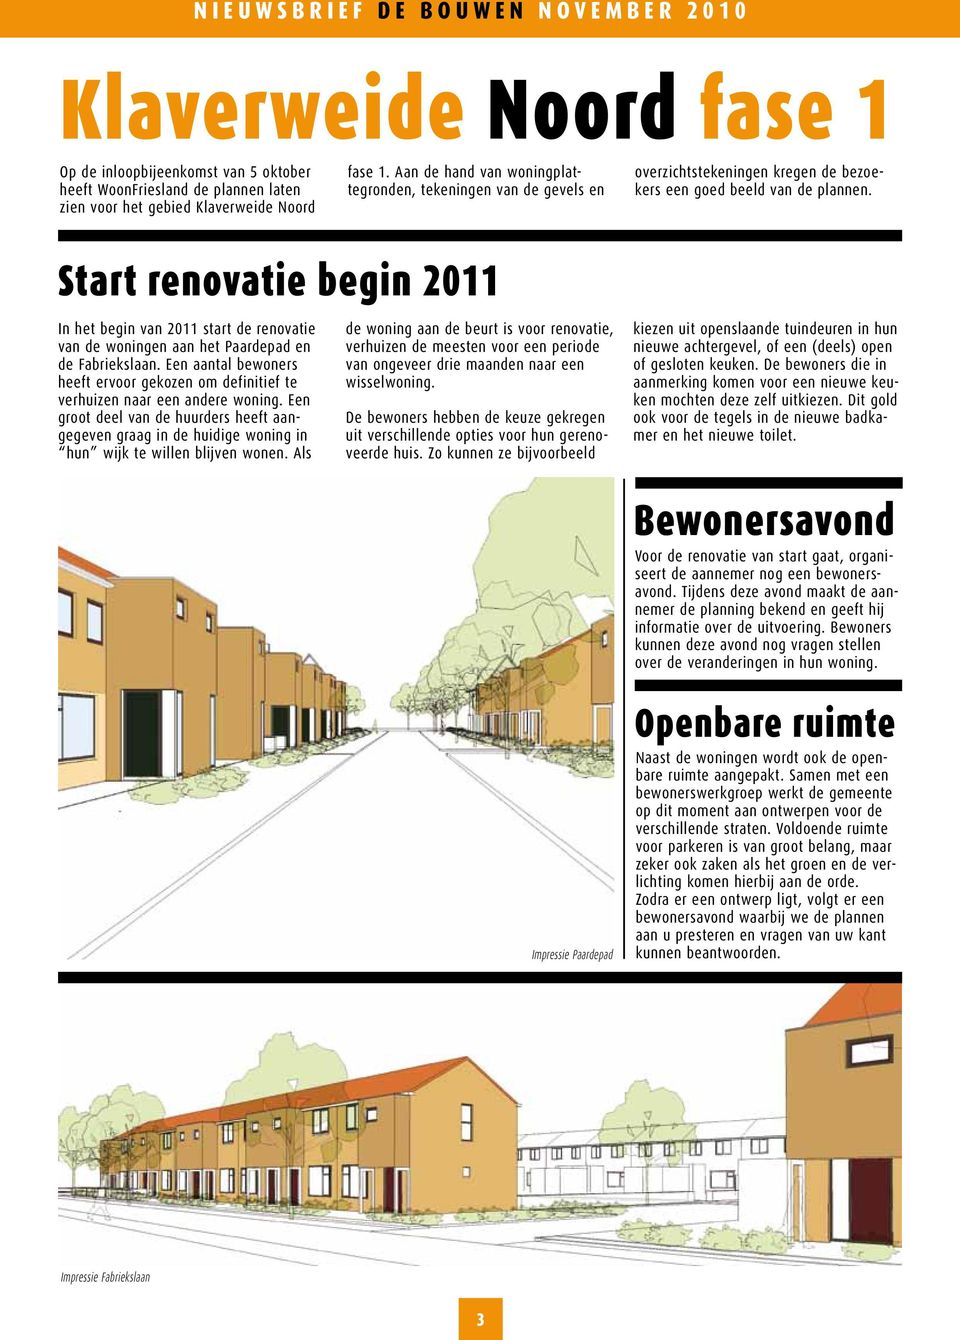 Start renovatie begin 2011 In het begin van 2011 start de renovatie van de woningen aan het Paardepad en de Fabriekslaan.